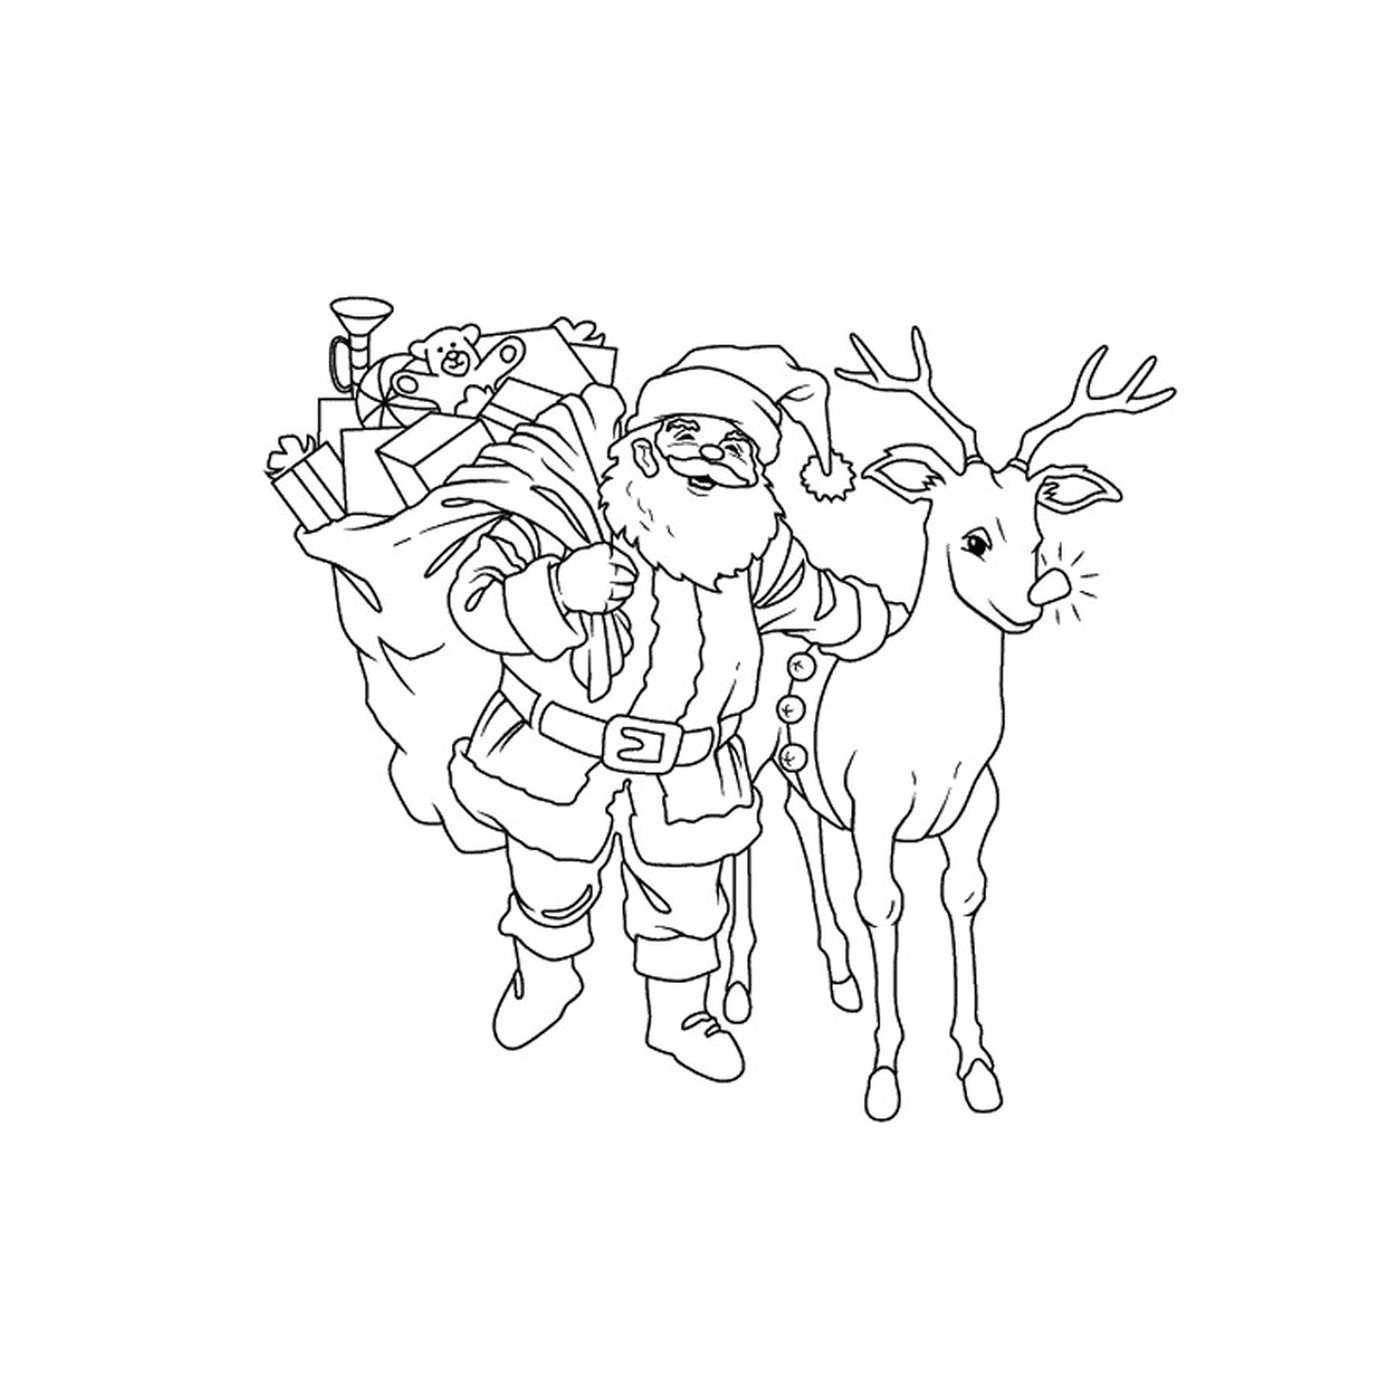  Santa con sus renos 